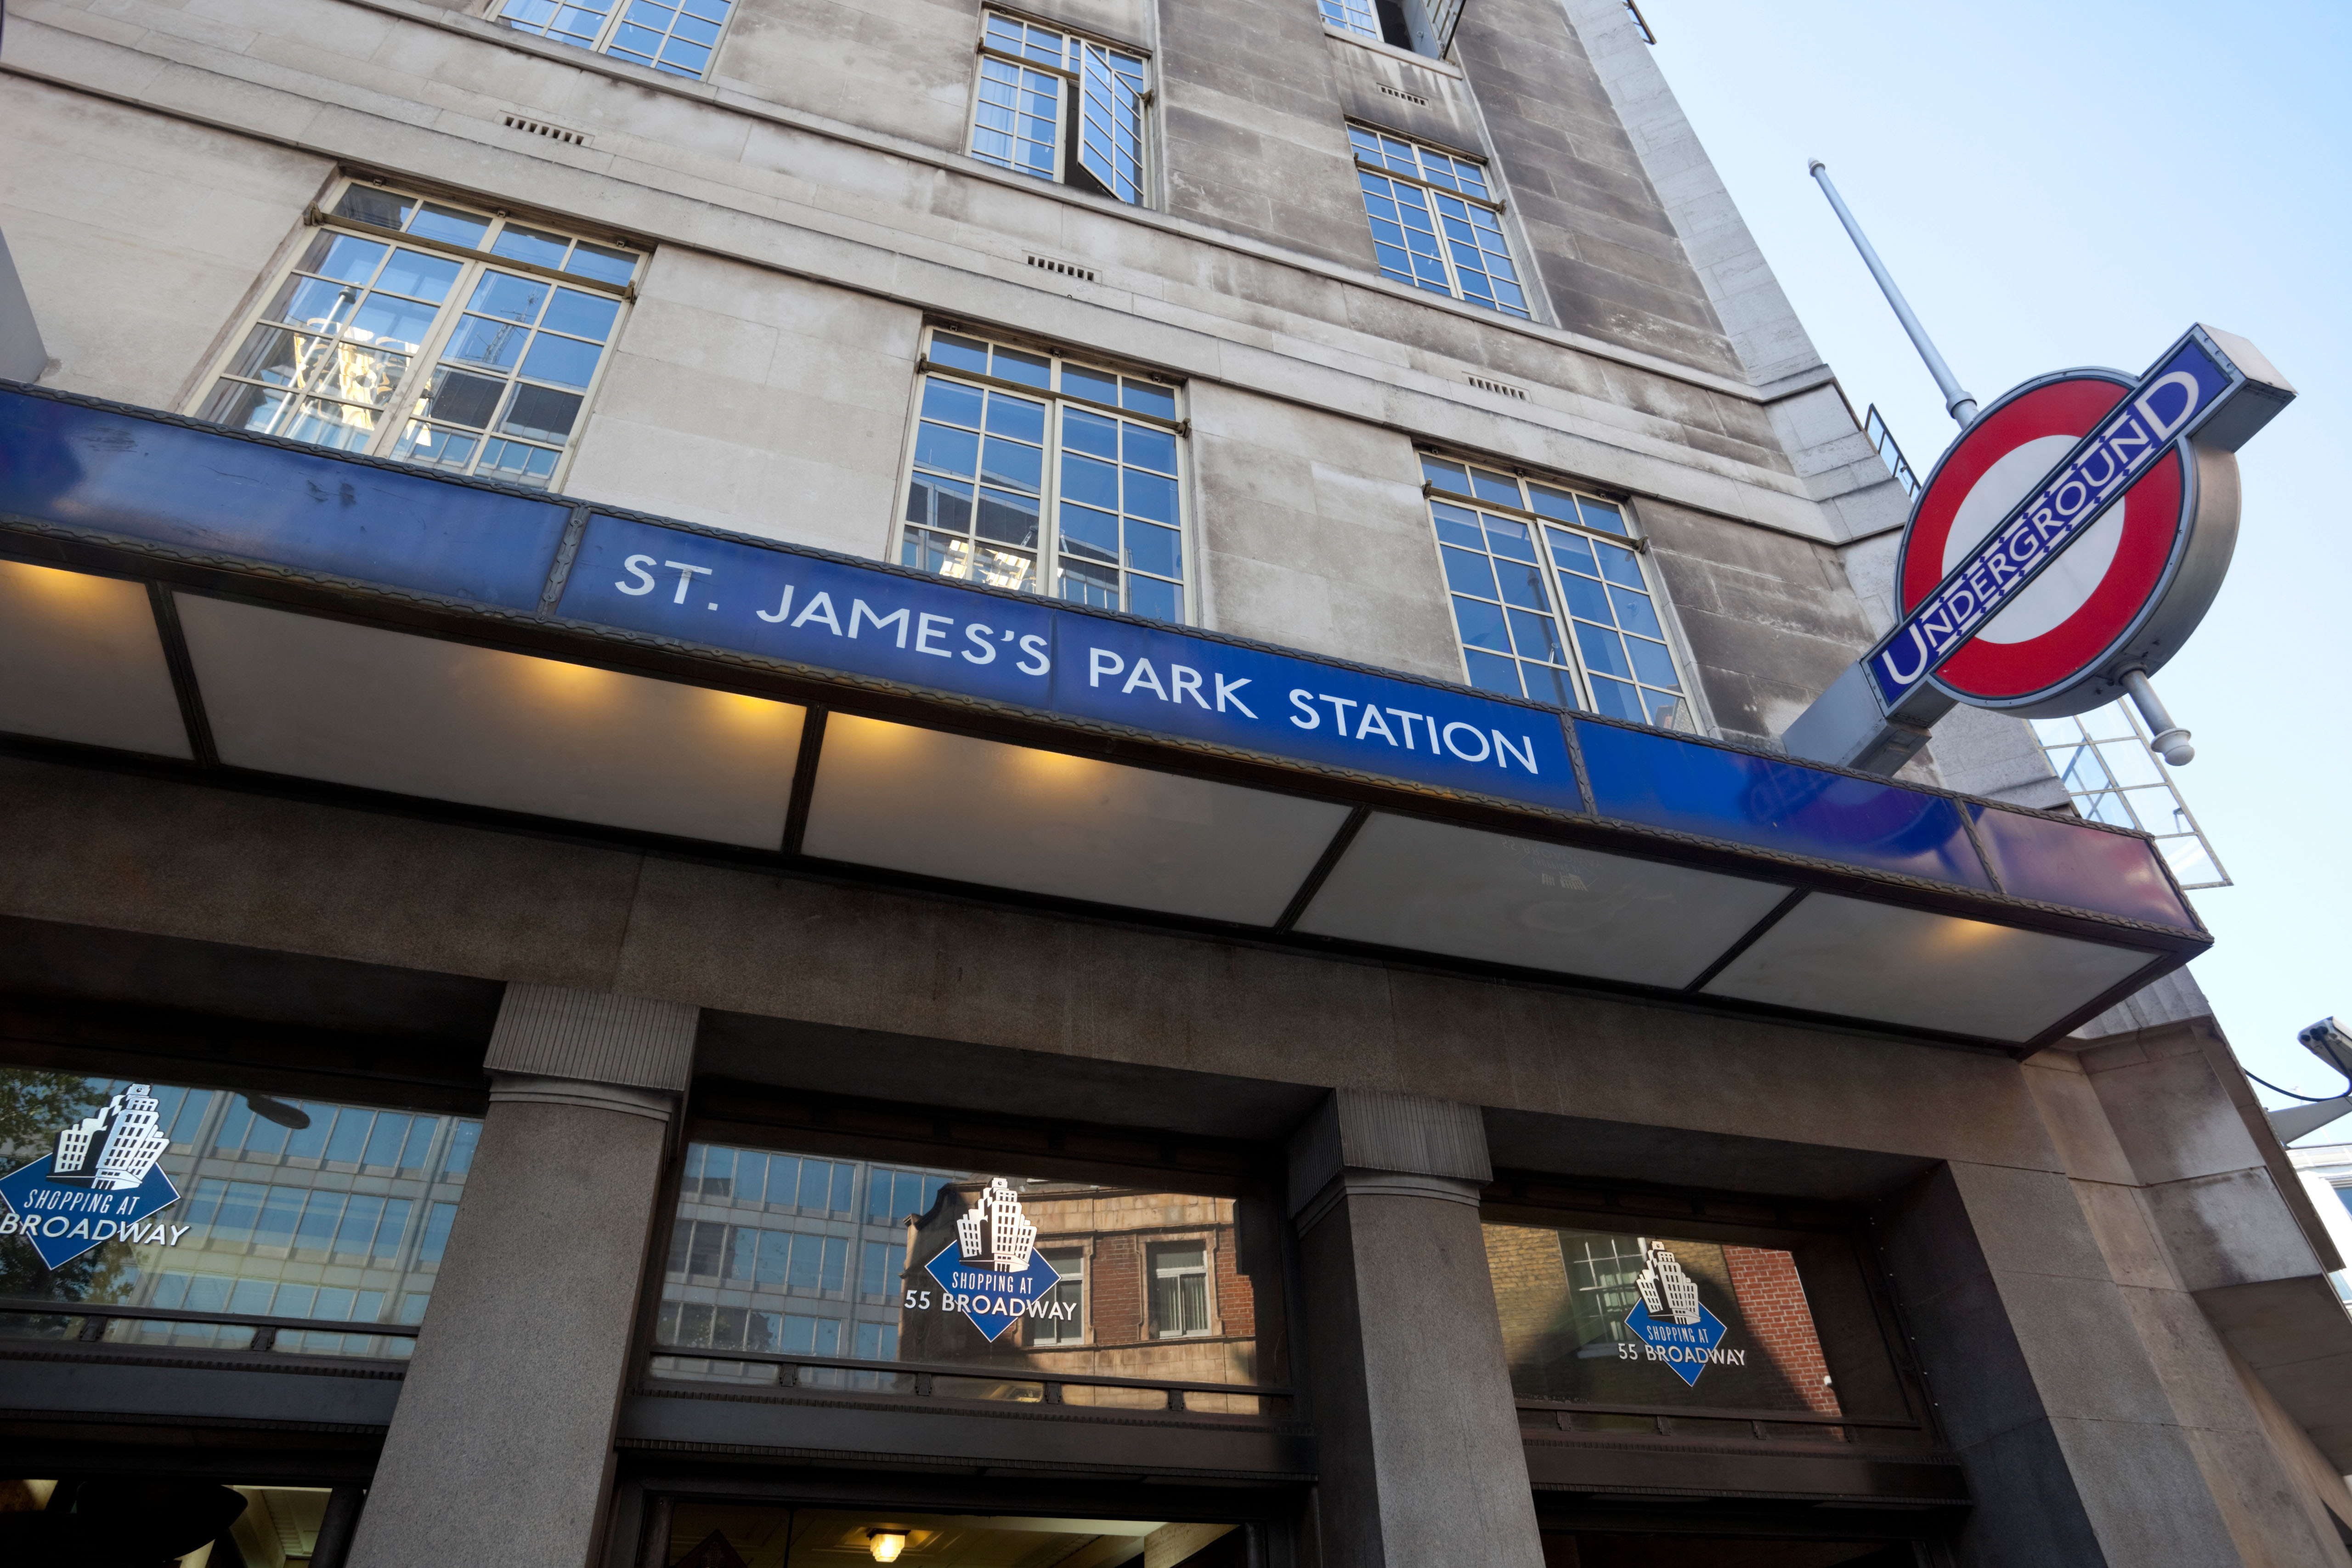 St James's Park Tube station